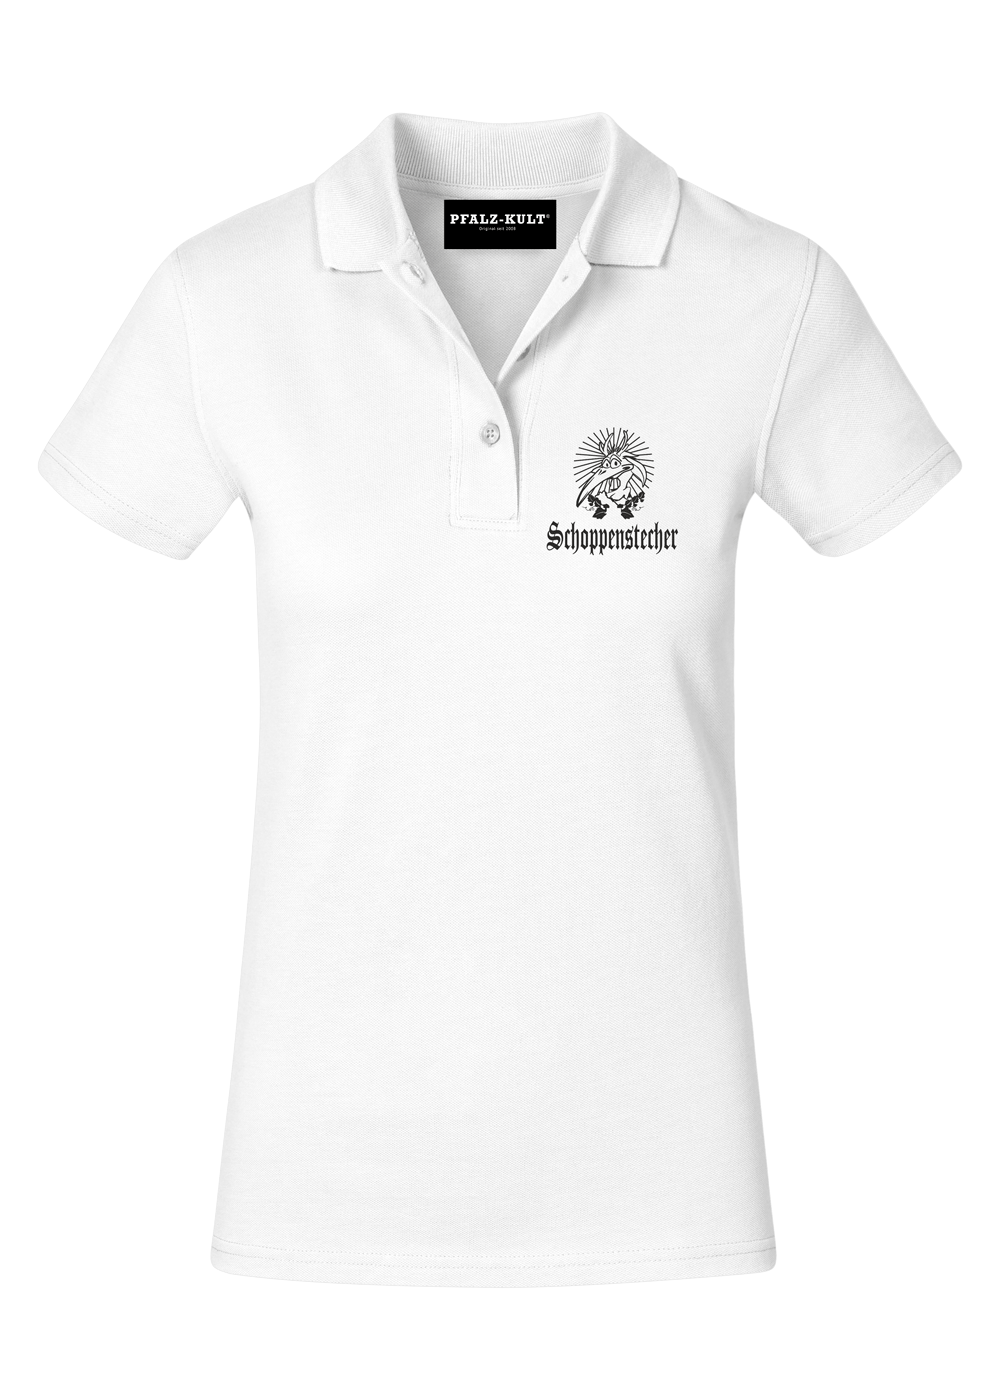 Schoppenstecher - Poloshirt Frauen